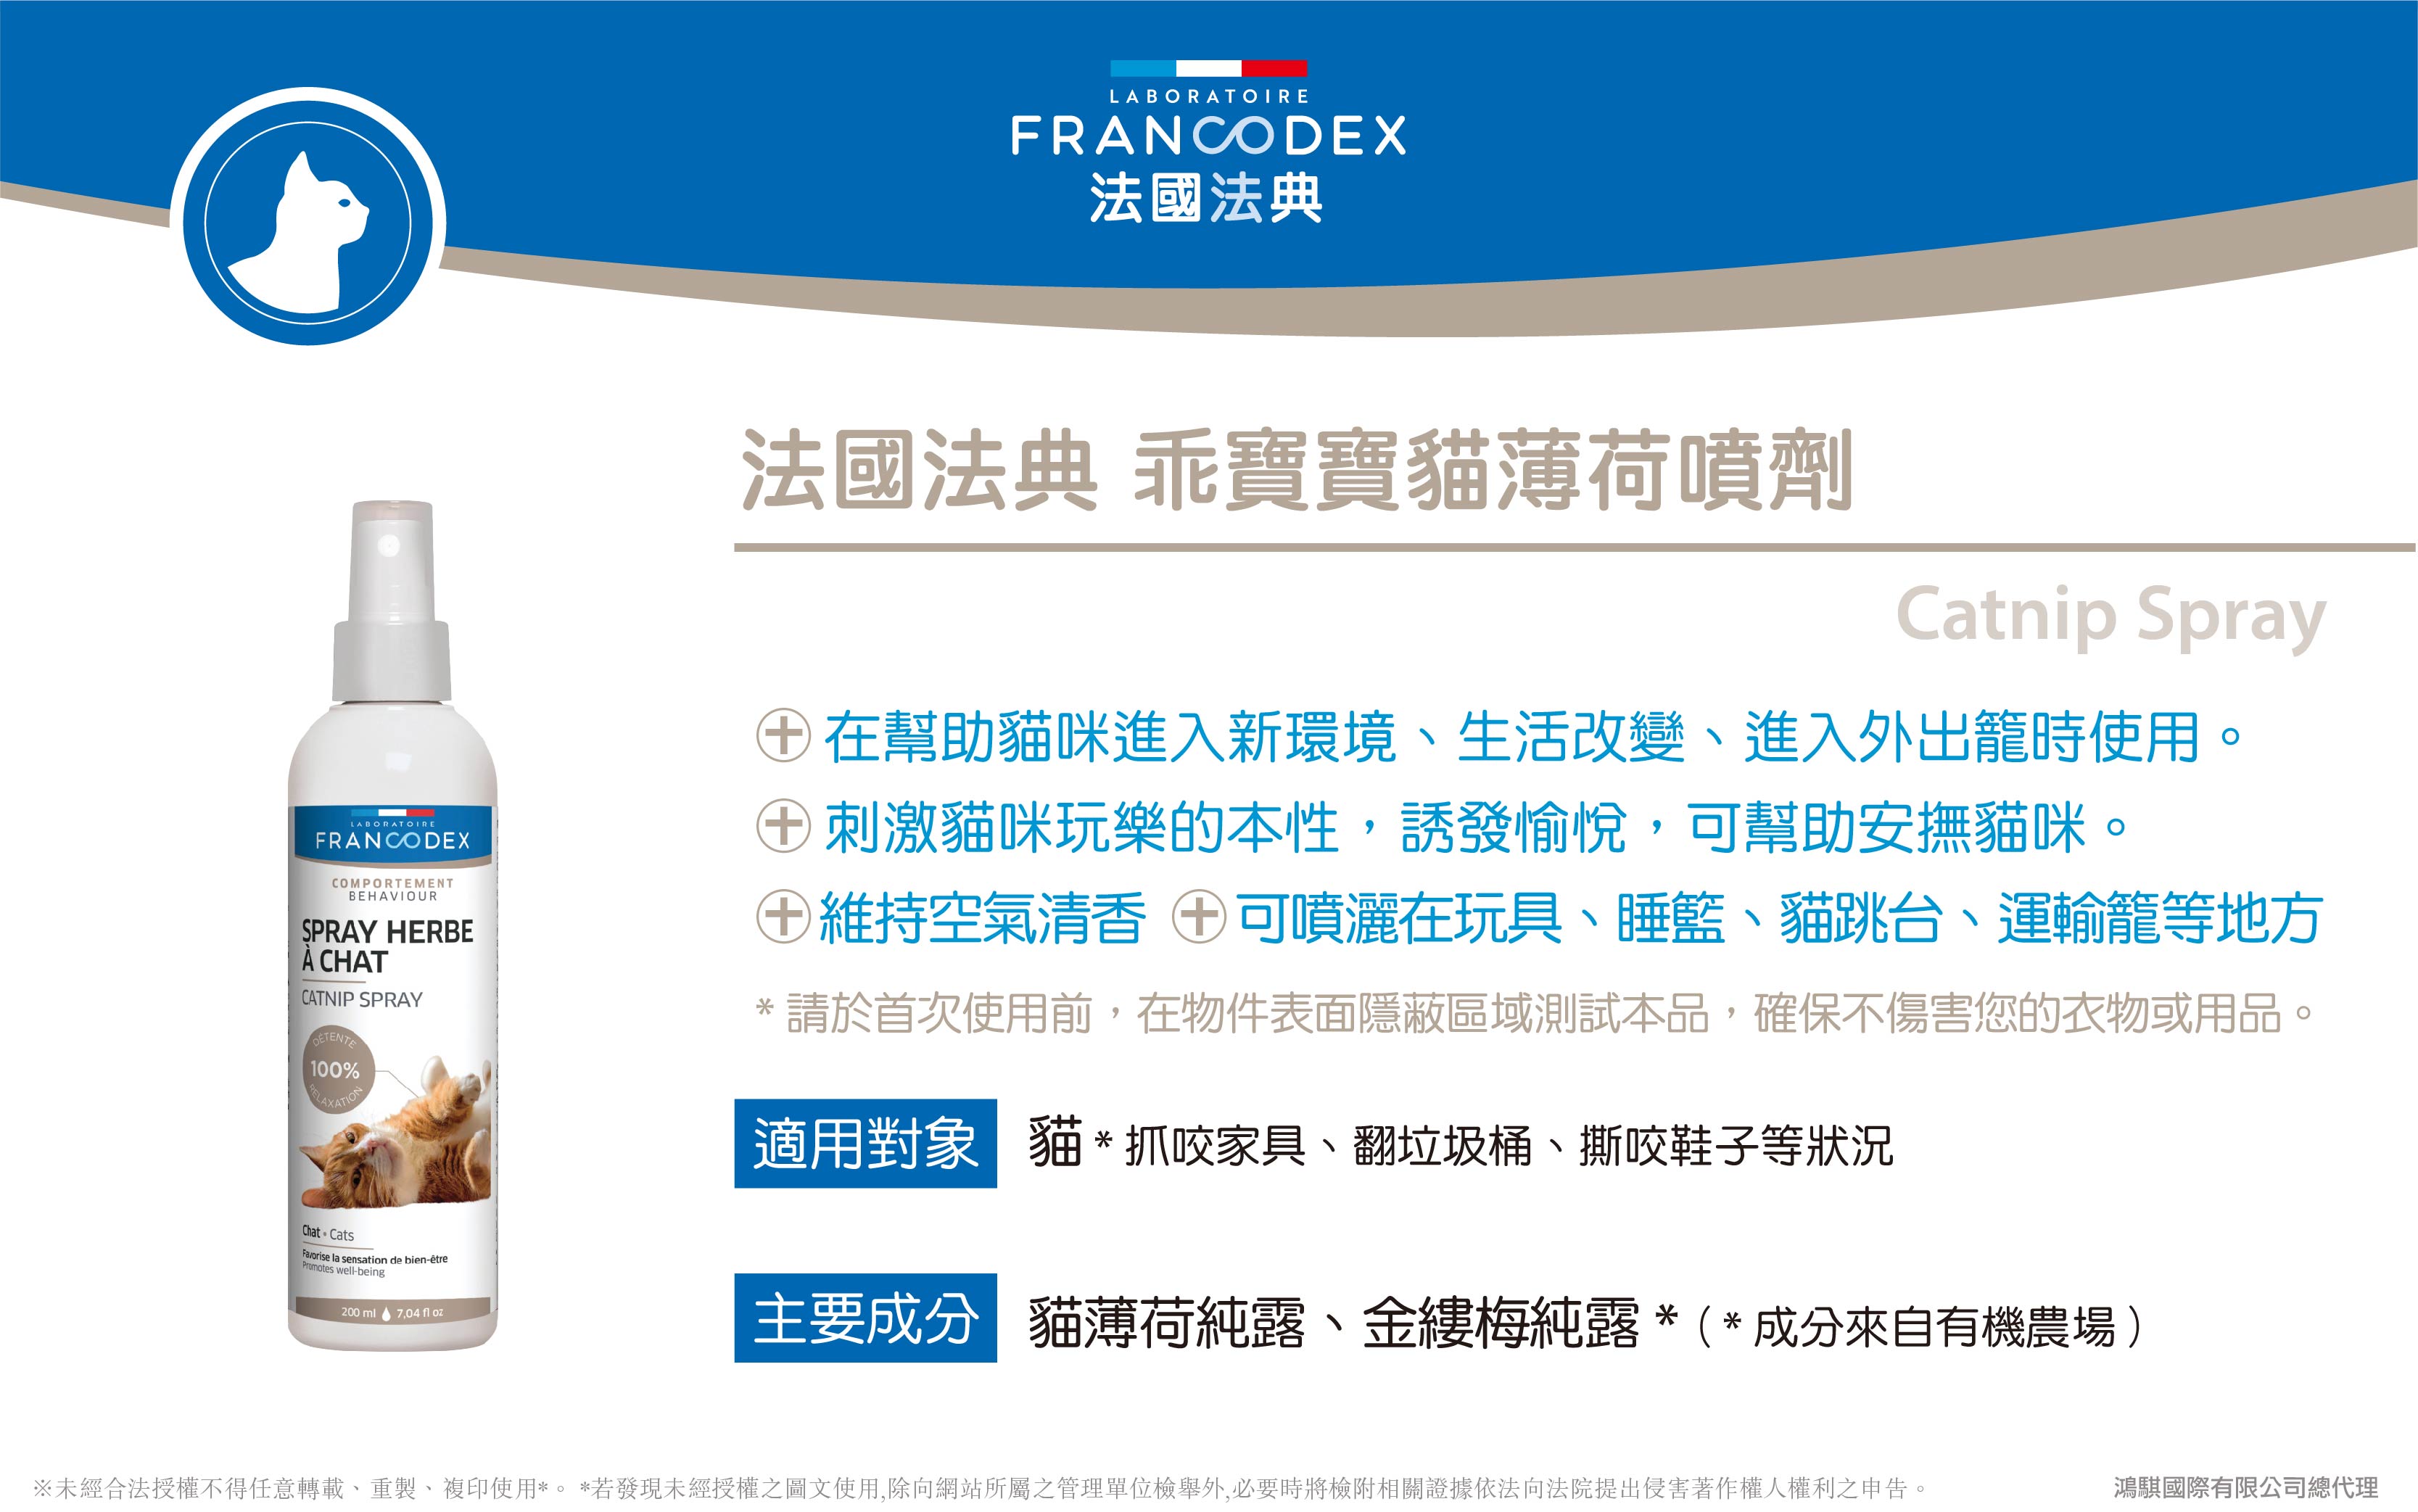 【Francodex】官網-產品介紹_31法國法典乖寶寶貓薄荷噴劑